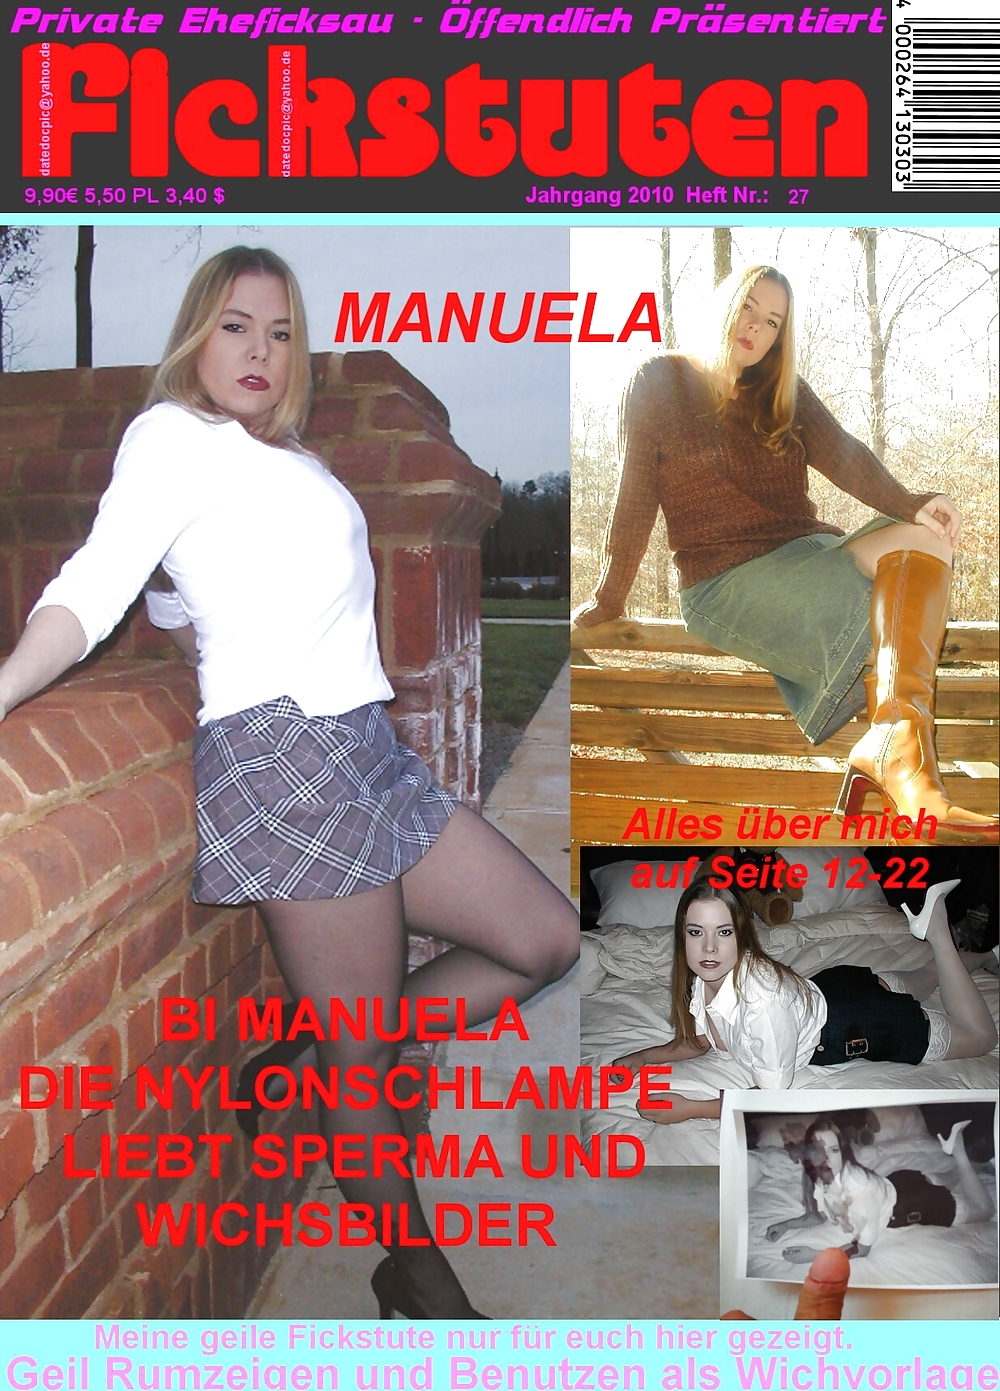 Après Manuela #1167487